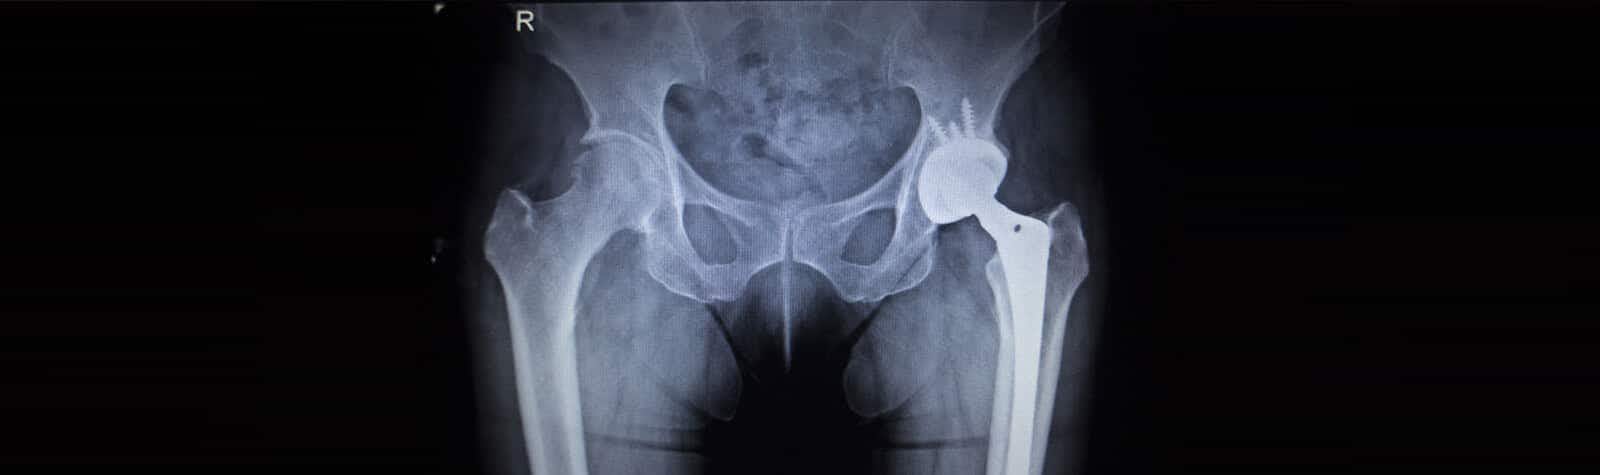 Pinnacle Hip Implant